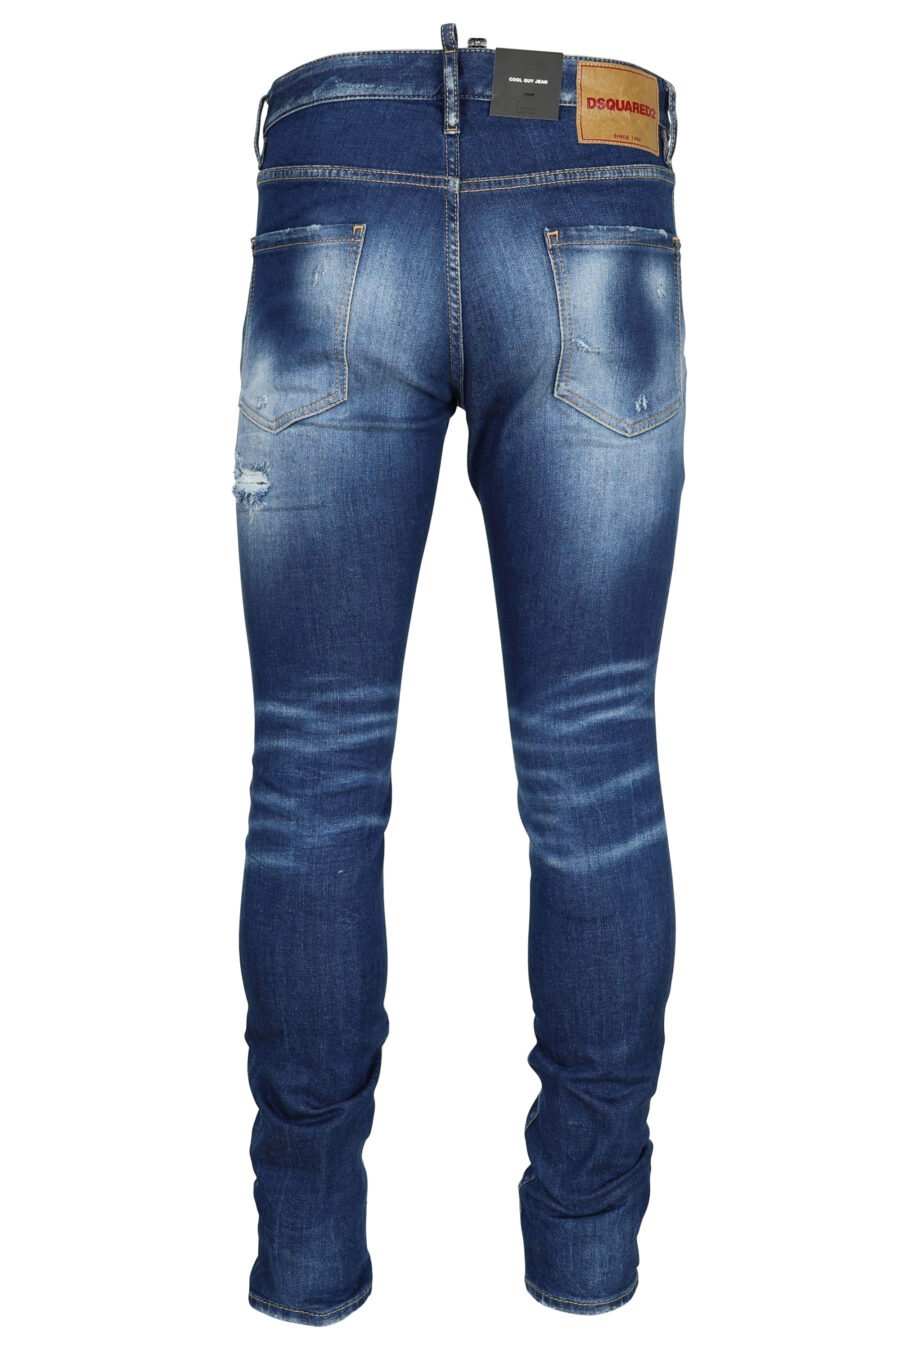 Pantalón vaquero azul claro "cool guy" con efecto lavado y rotos - 8054148339203 2